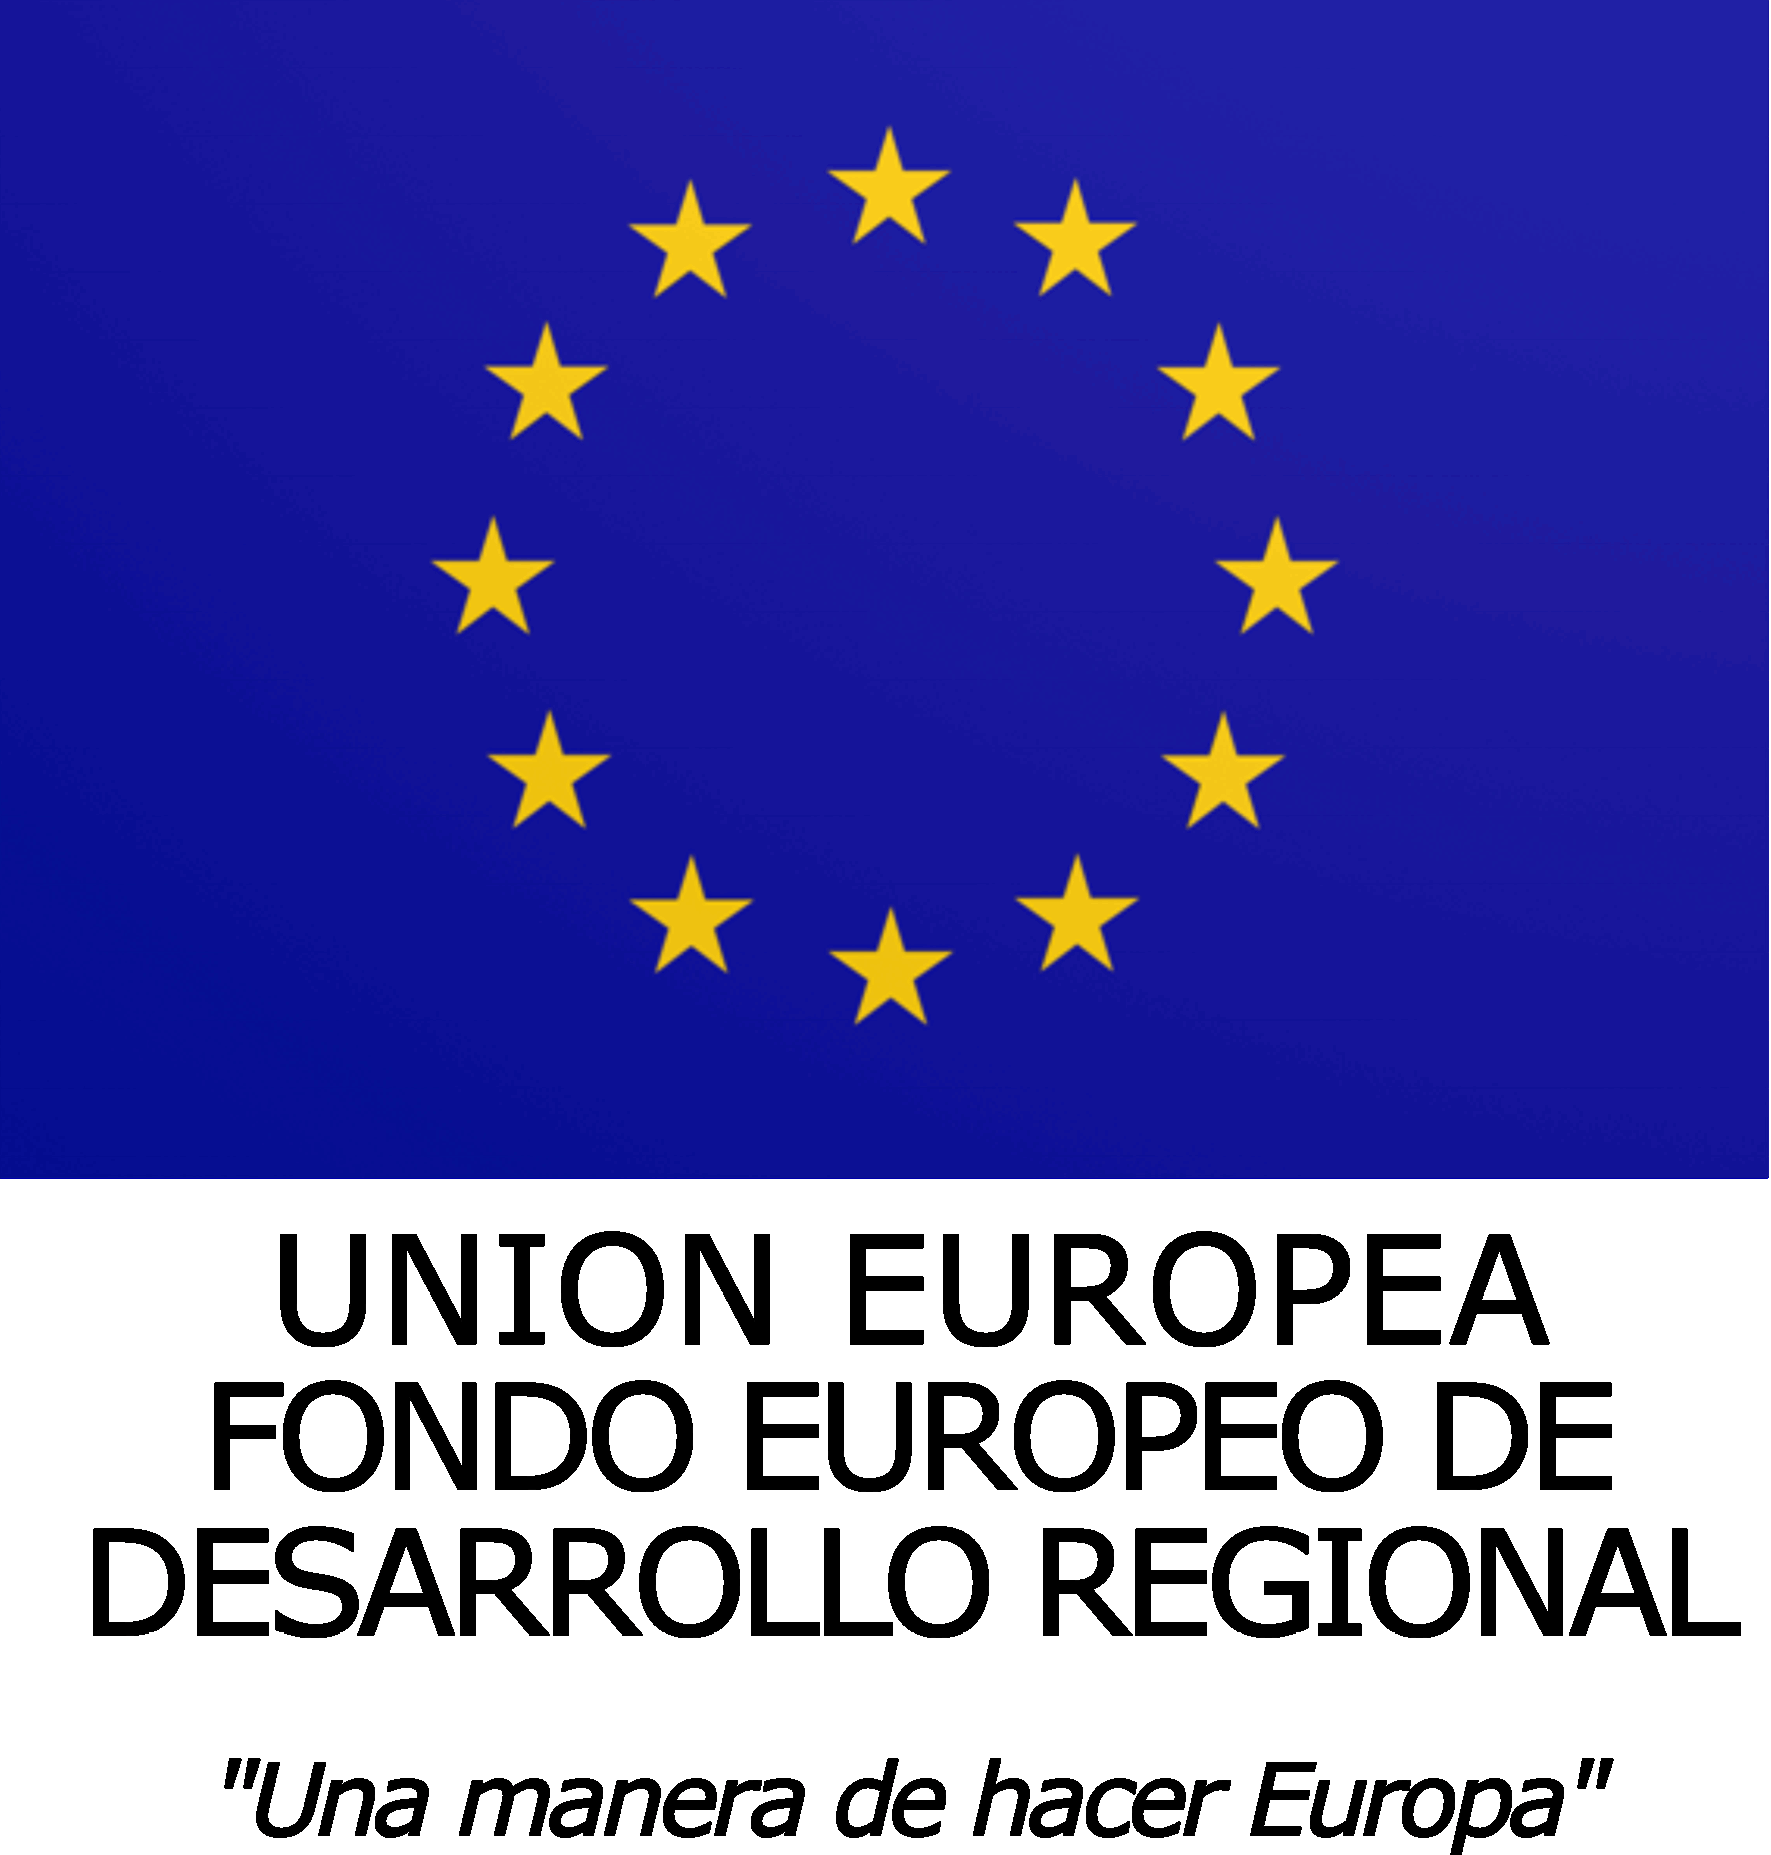 Fondo Europeo